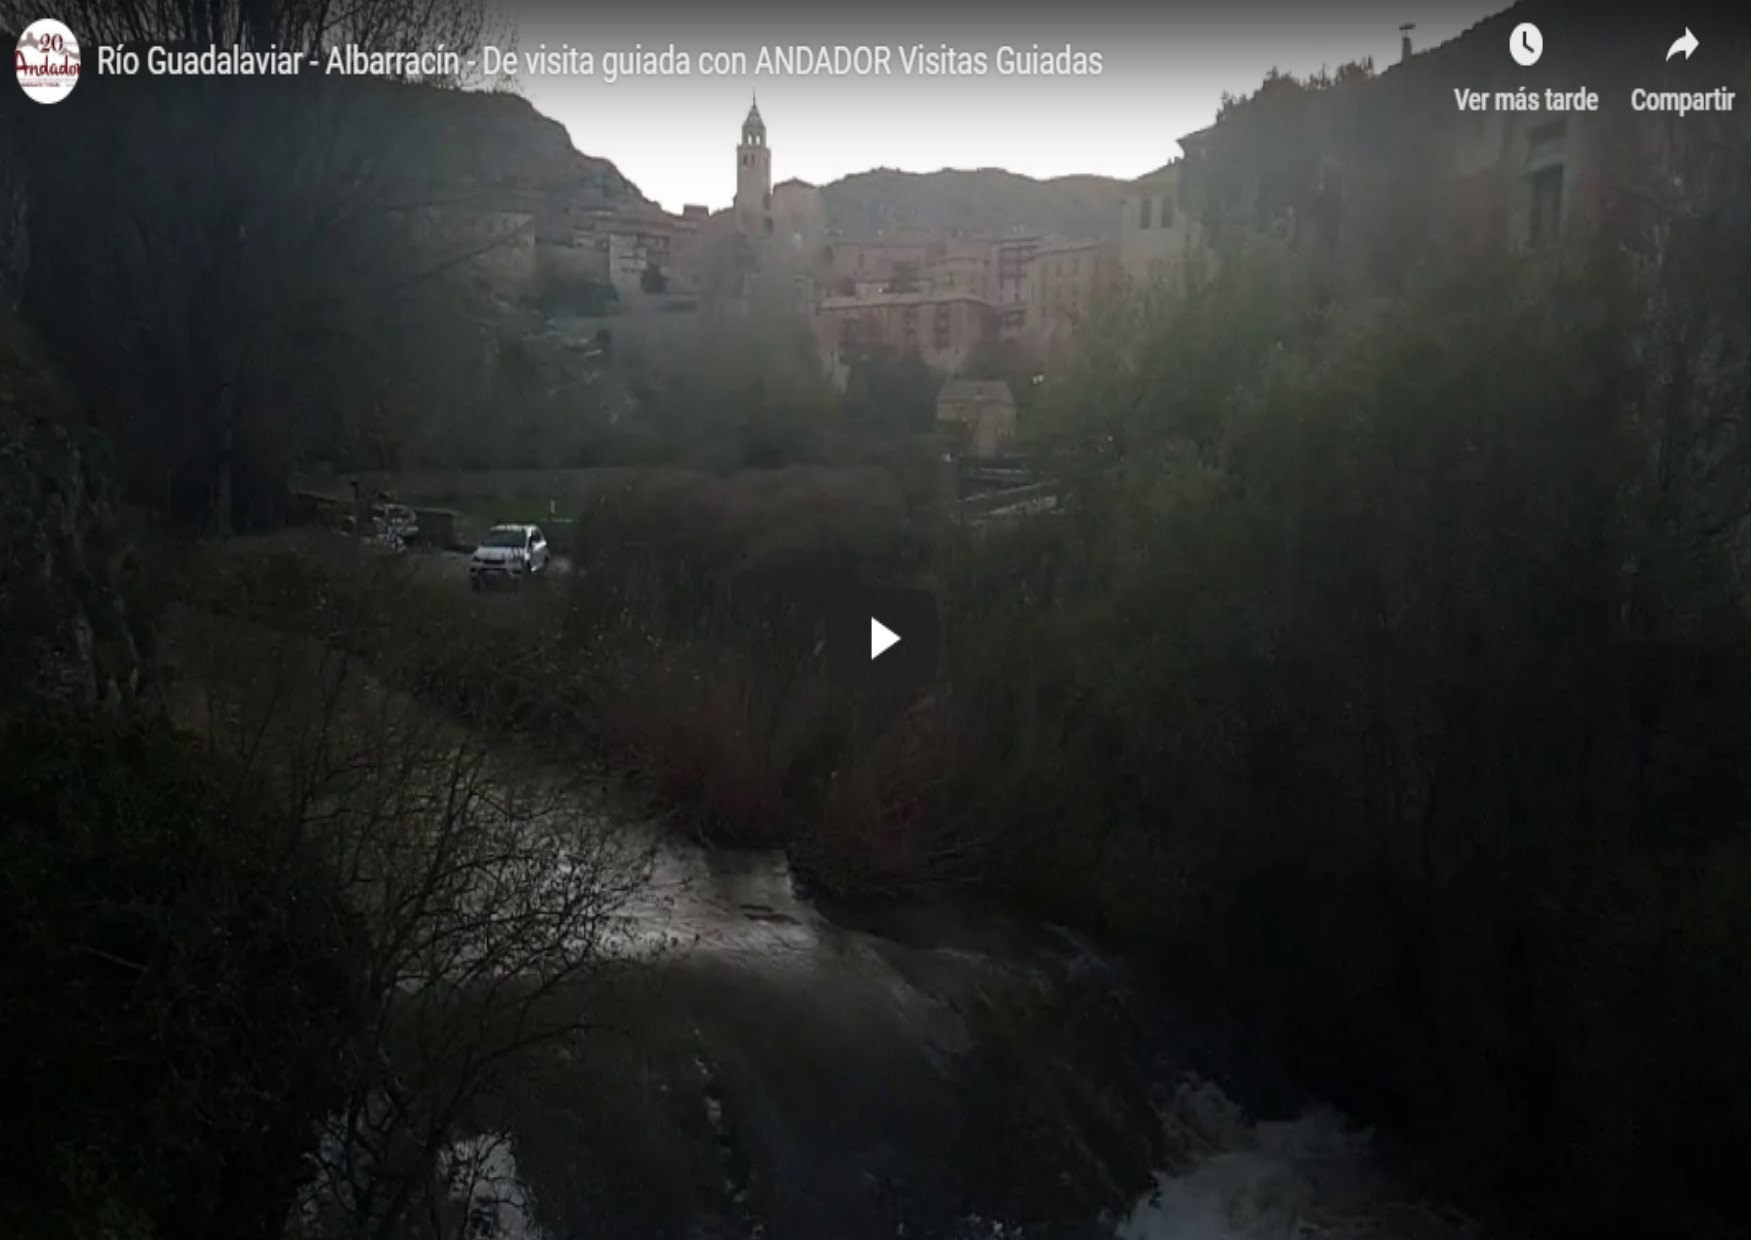 #Espectacular #Crecida del #RioGuadalaviar en #Albarracín… de #VisitaGuiada en #Albarracín con ANDADOR Visitas Guiadas